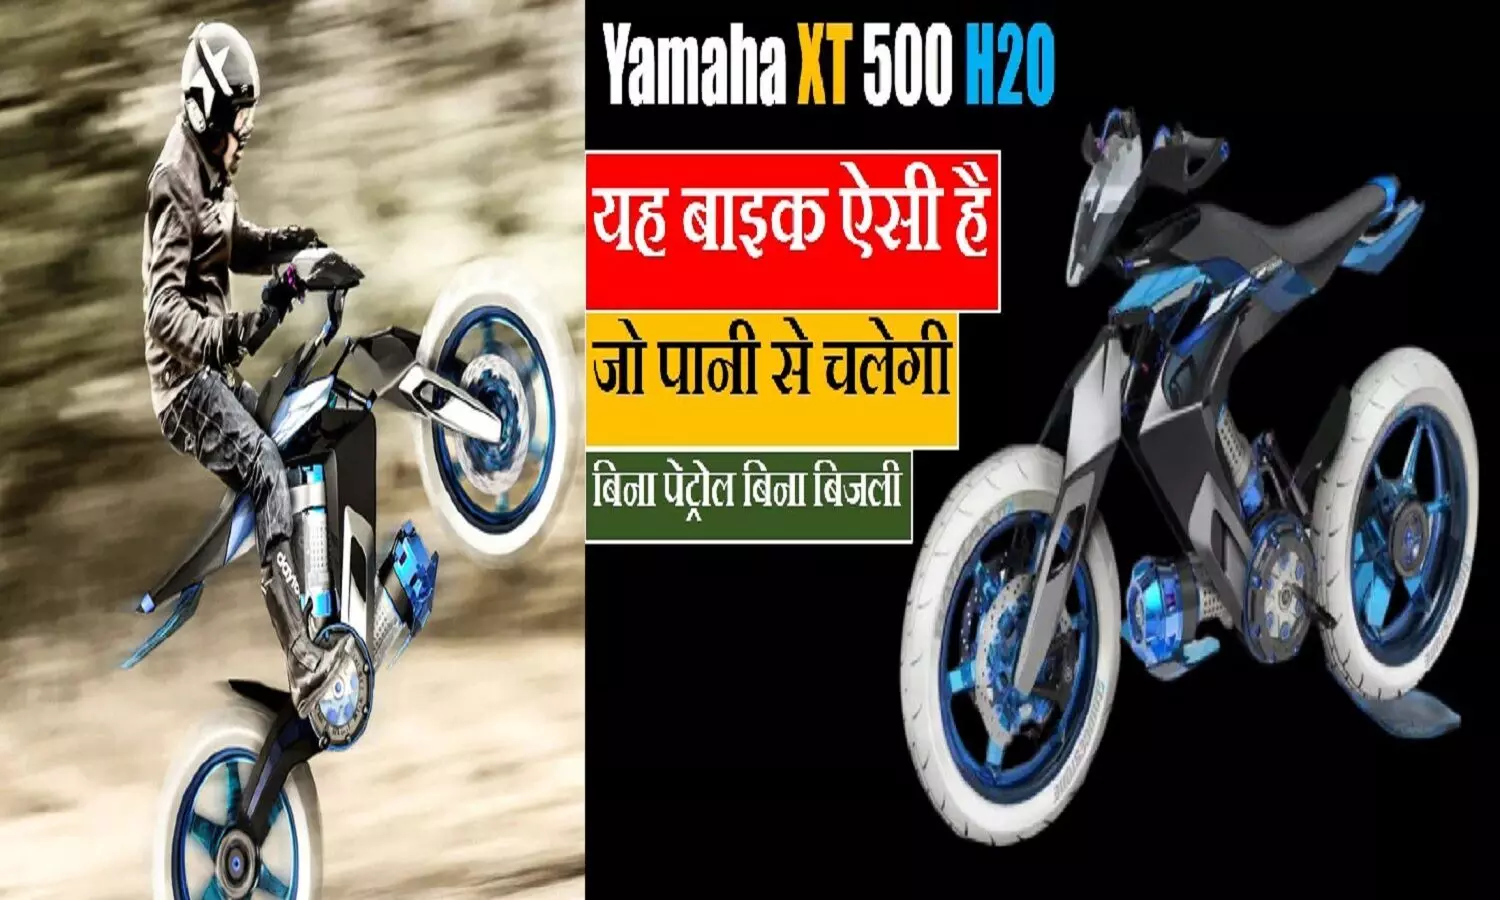 Yamaha की पानी से चलने वाली बाइक: कीमत भी बहुत कम और माइलेज तो पूछो ही मत